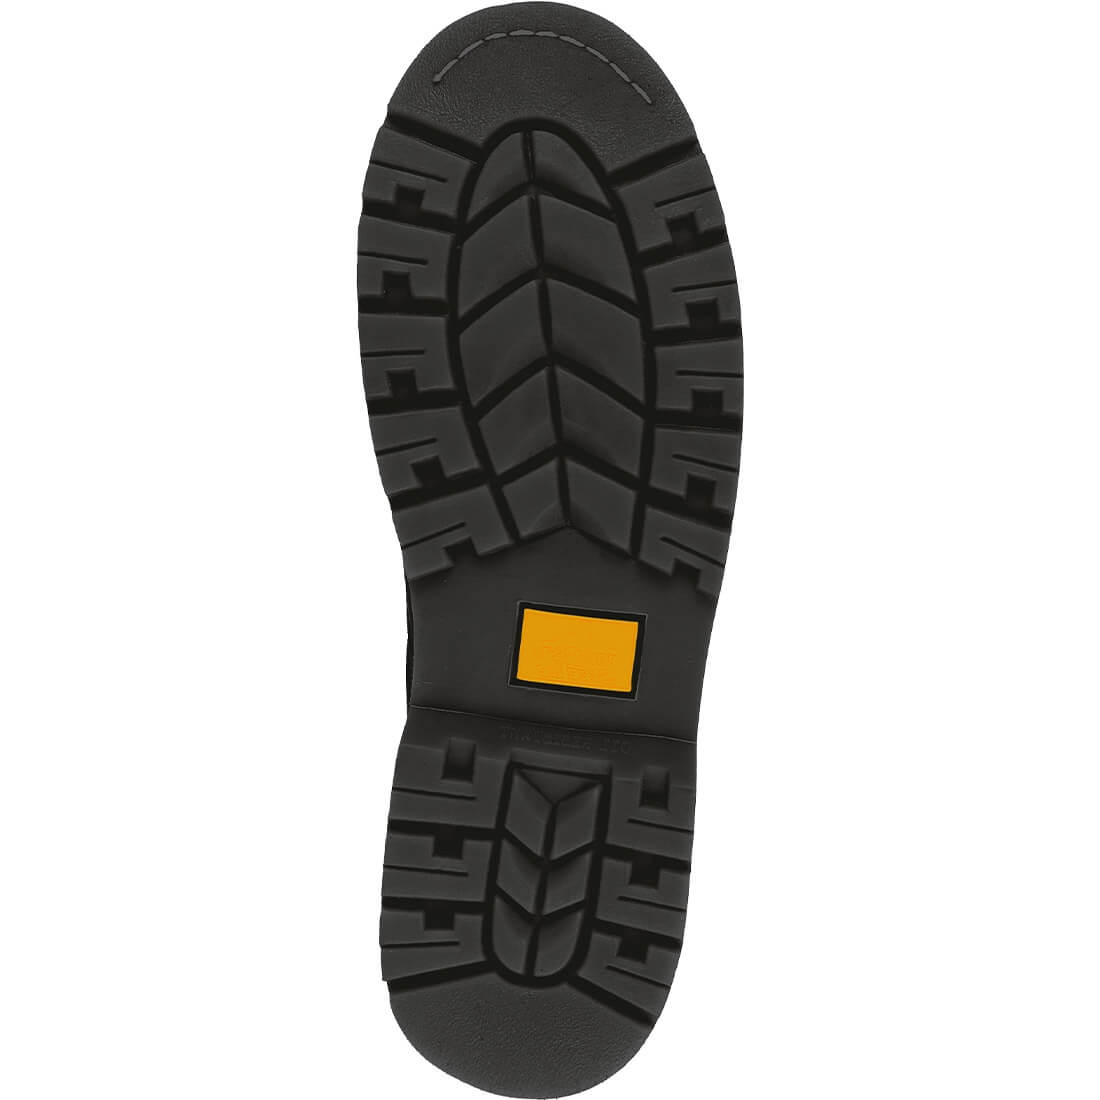 Bocanc de Protectie Steelite™ Welted SB - Incaltaminte de protectie | Bocanci, Pantofi, Sandale, Cizme